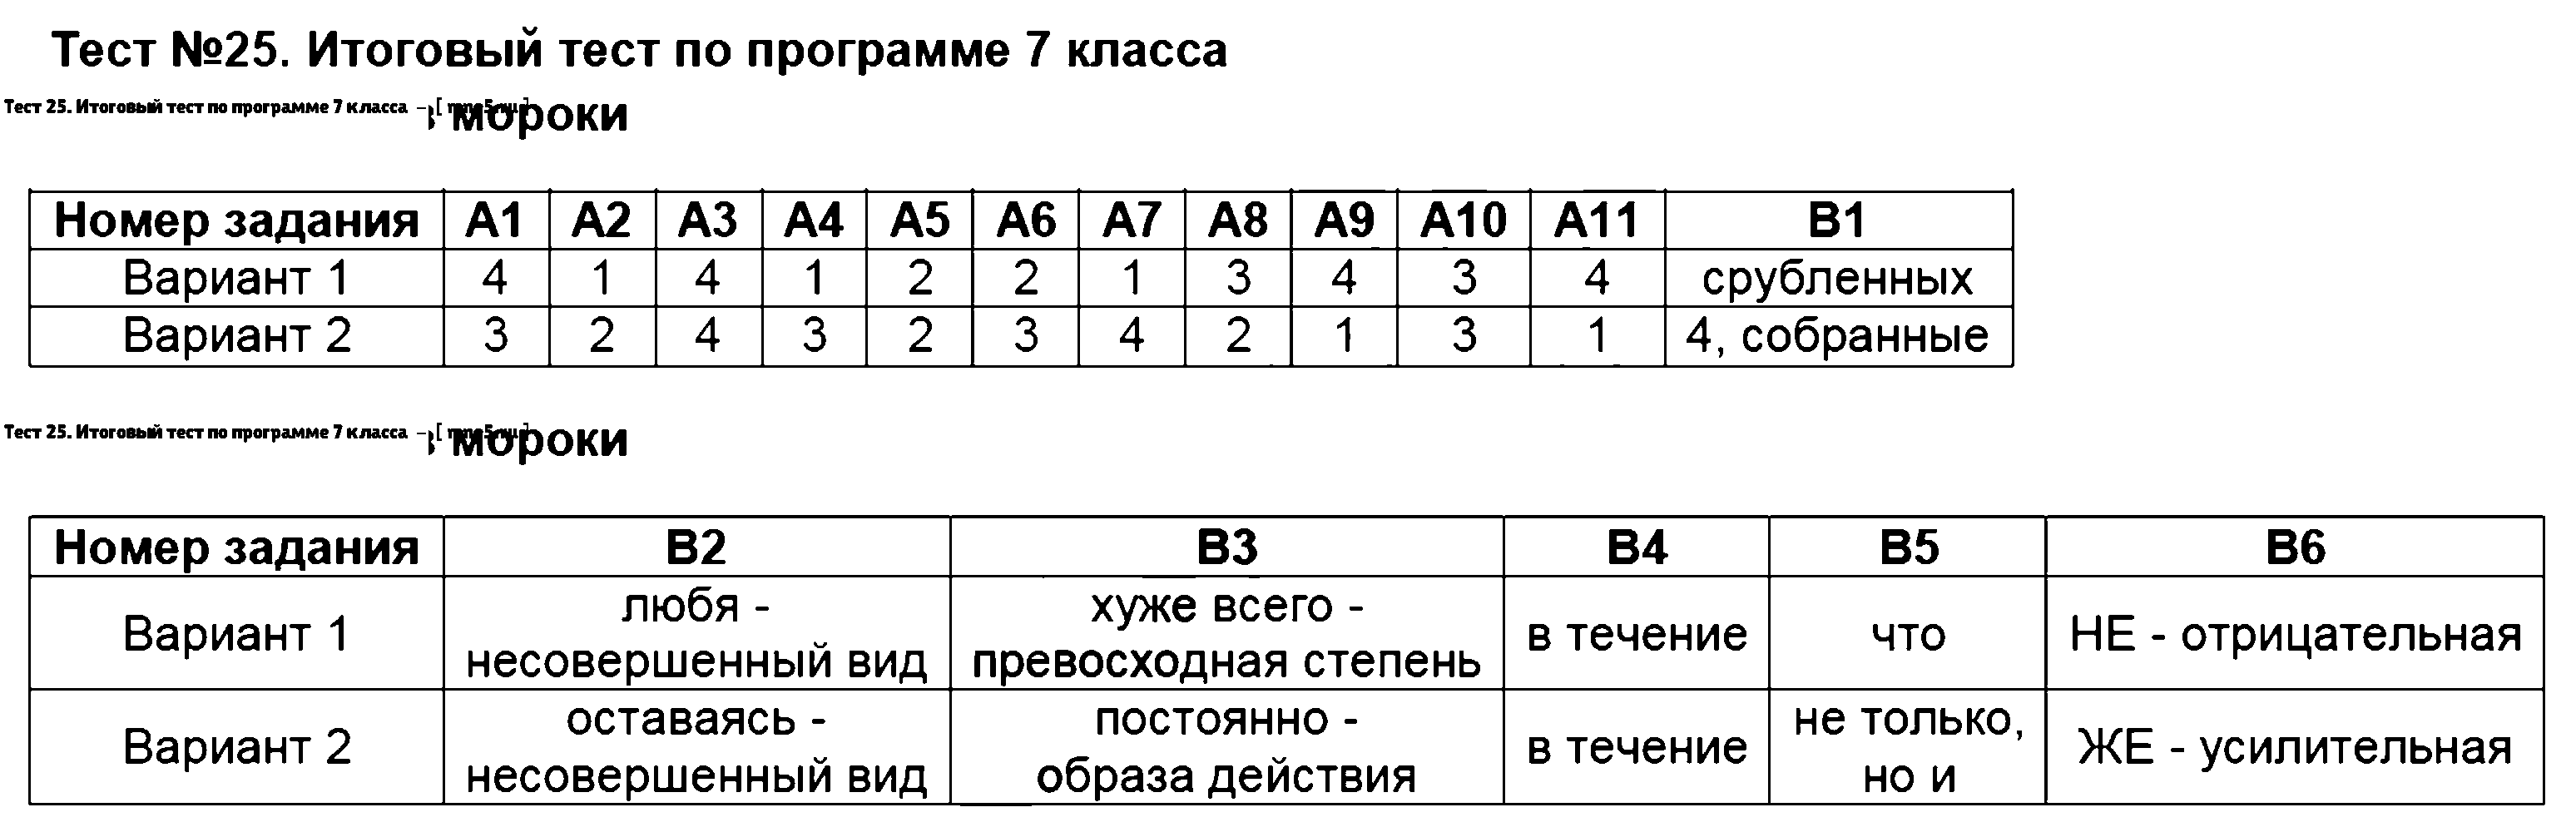 ГДЗ Русский язык 7 класс - Тест 25. Итоговый тест по программе 7 класса